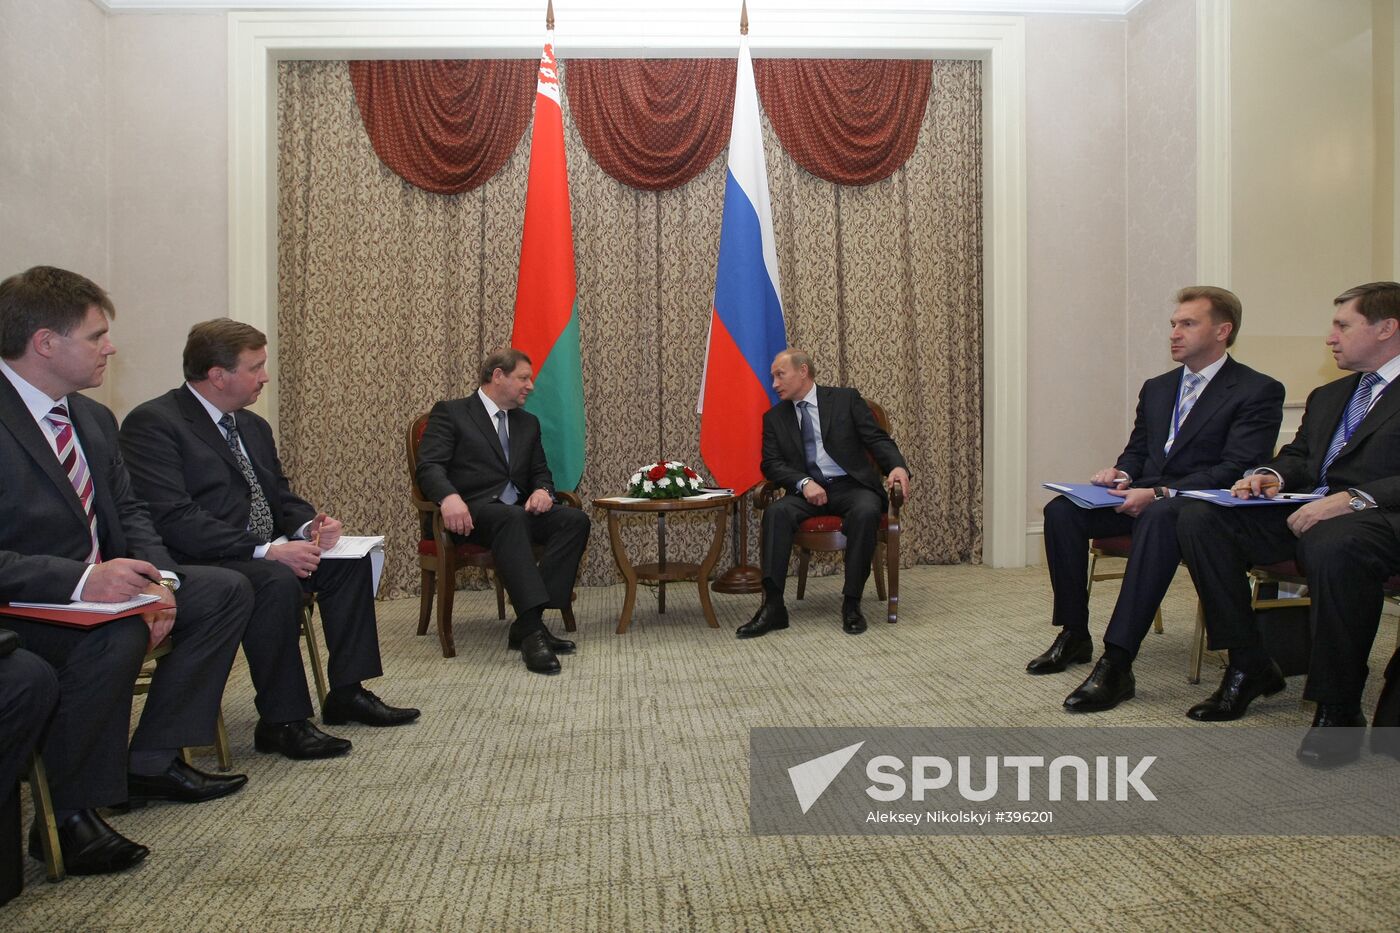 Vladimir Putin meeting with Sergei Sidorsky